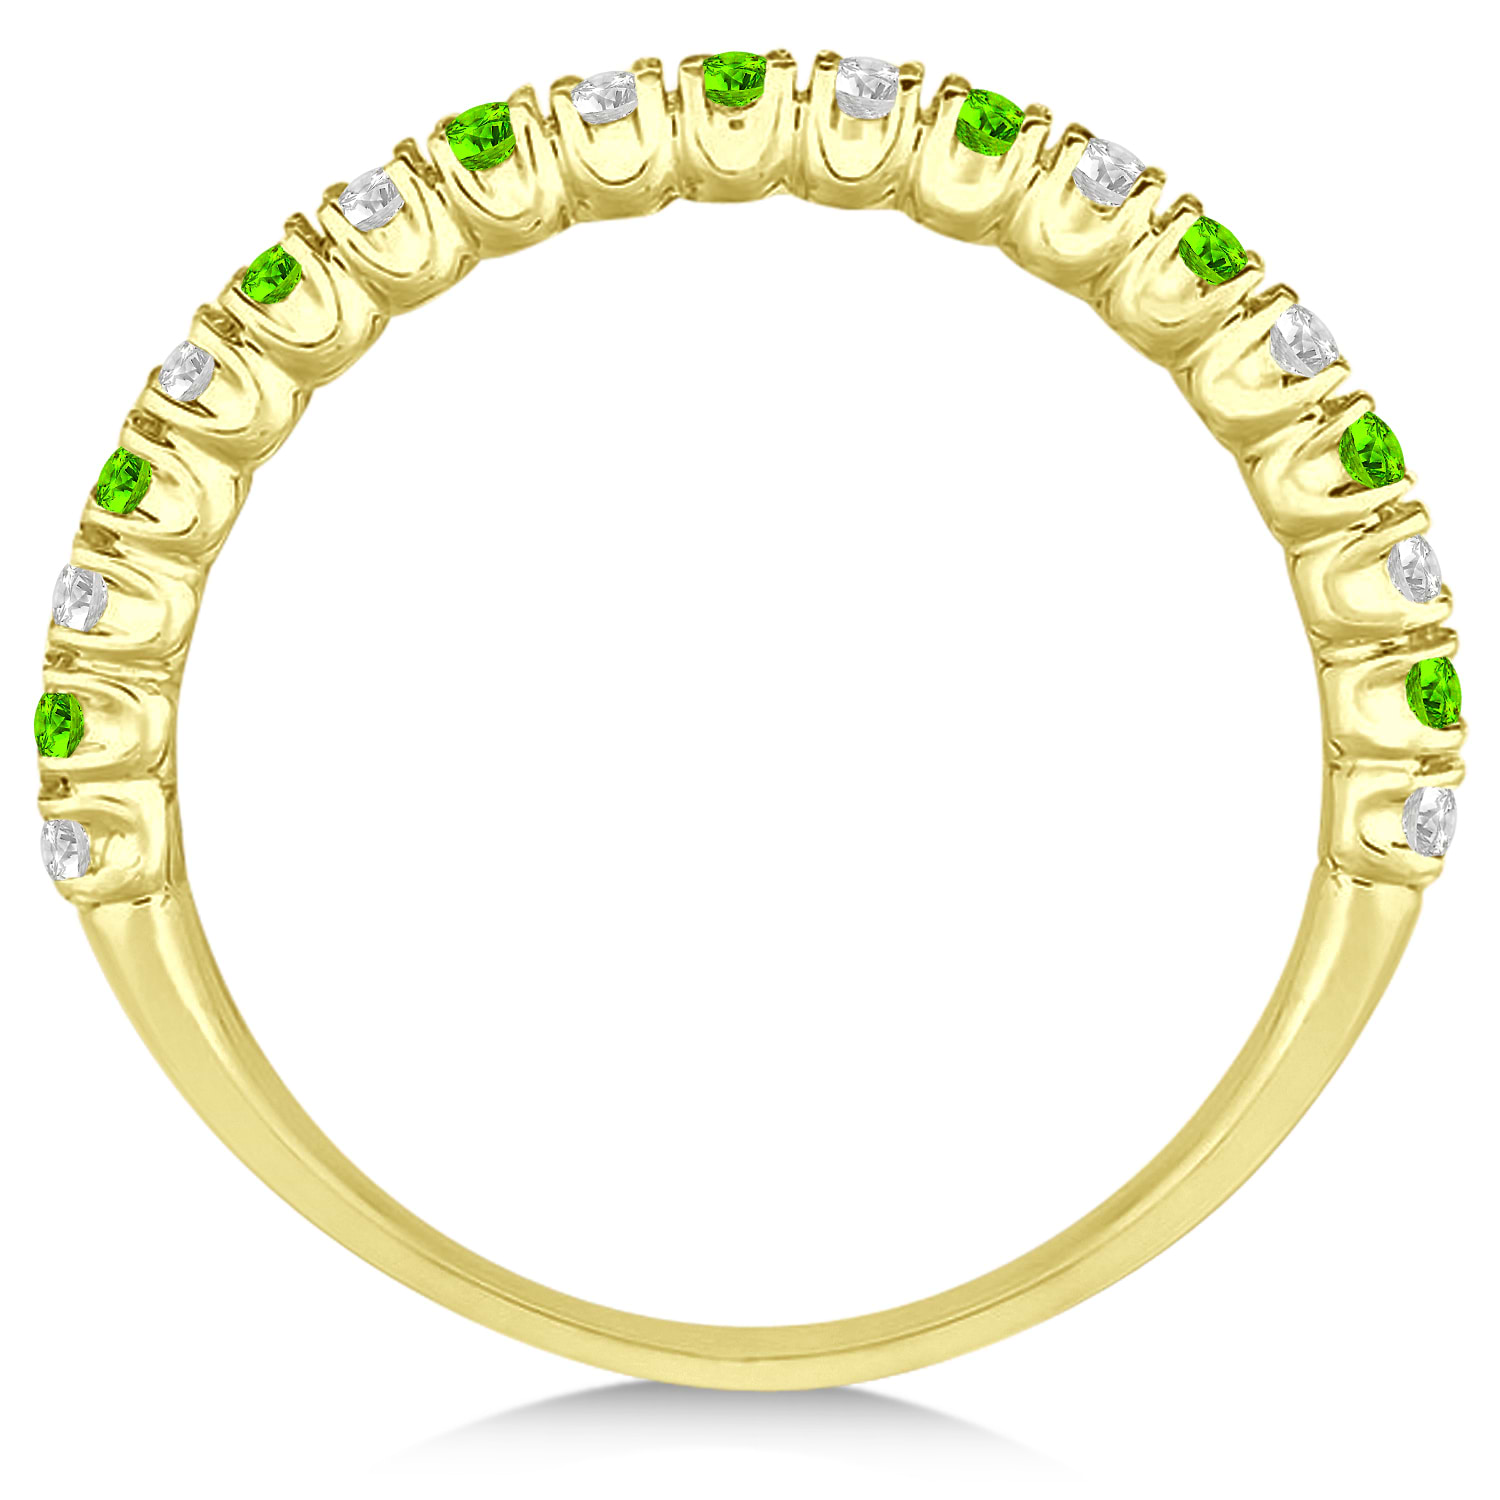 Peridot & Diamond Wedding Band Anniversary Ring in 14k Yellow Gold (0.50ct)